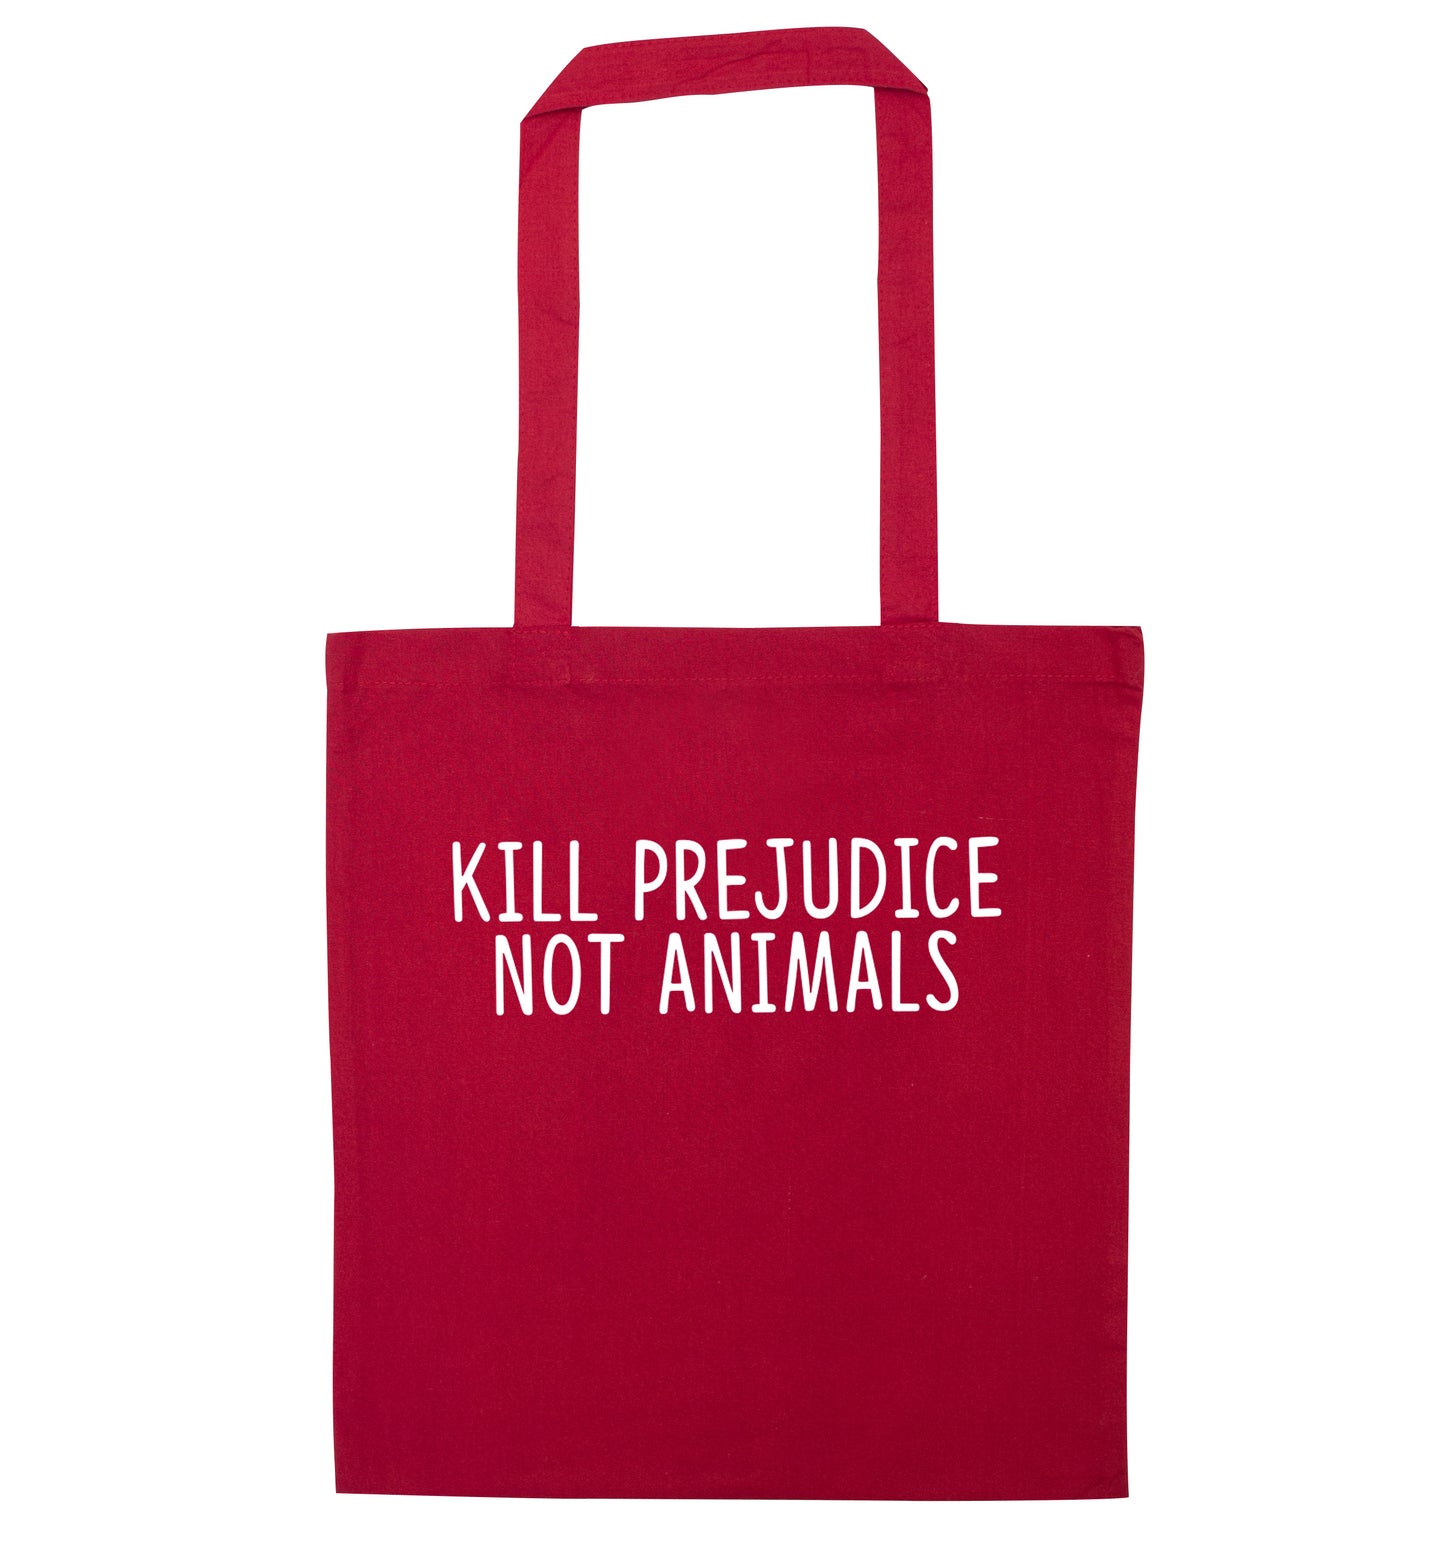 Kill Prejudice Not Animals red tote bag